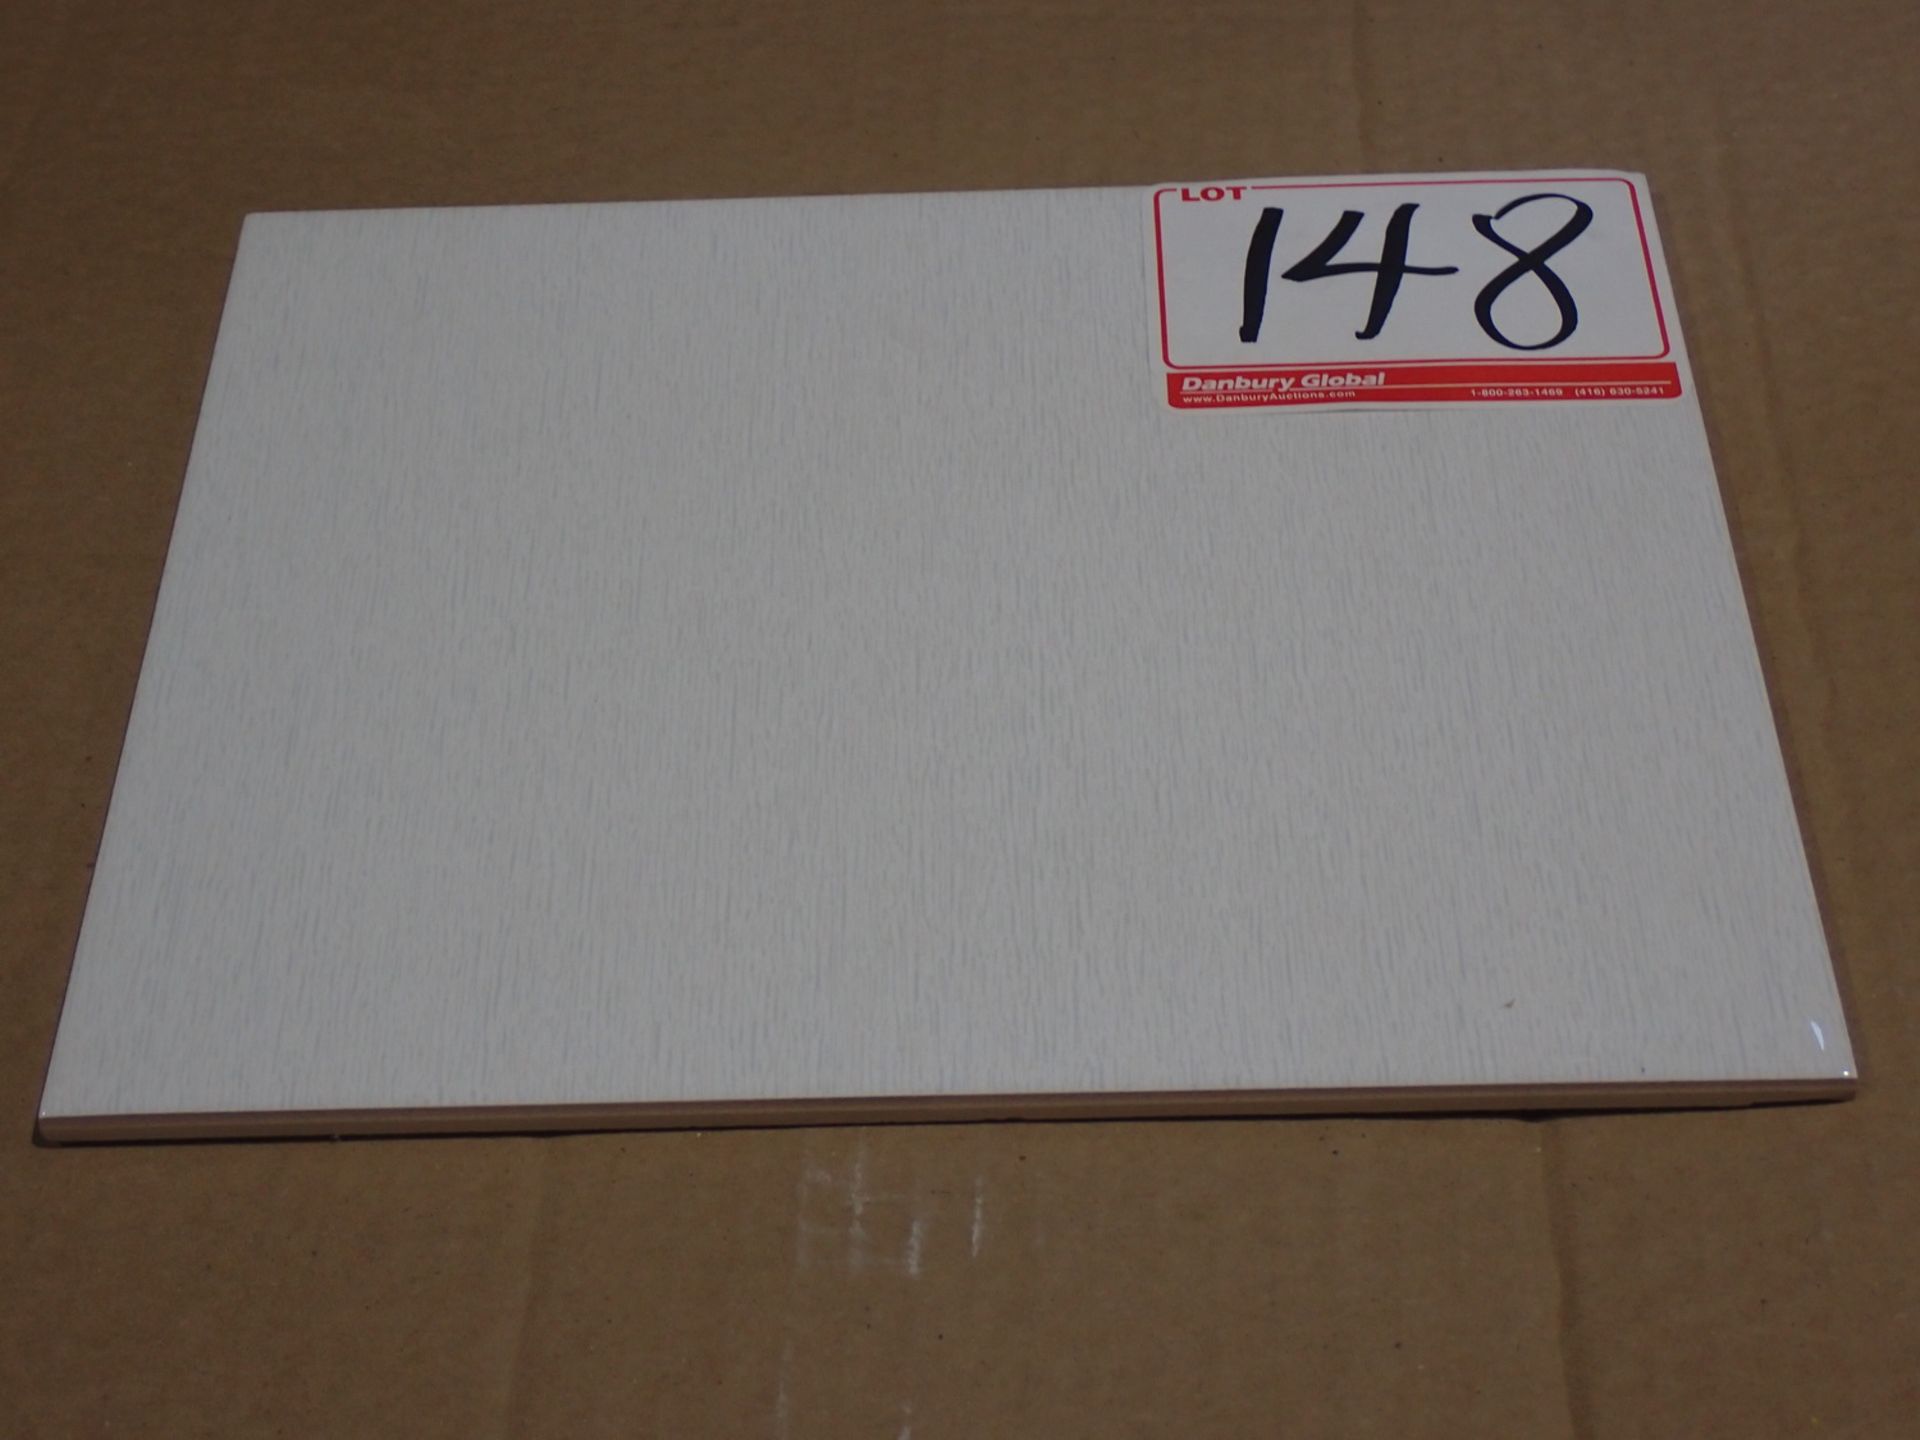 BOXES - SPLEDOUR WHITE 8" X 10" CERAMIC TILES (30 PCS/BOX)